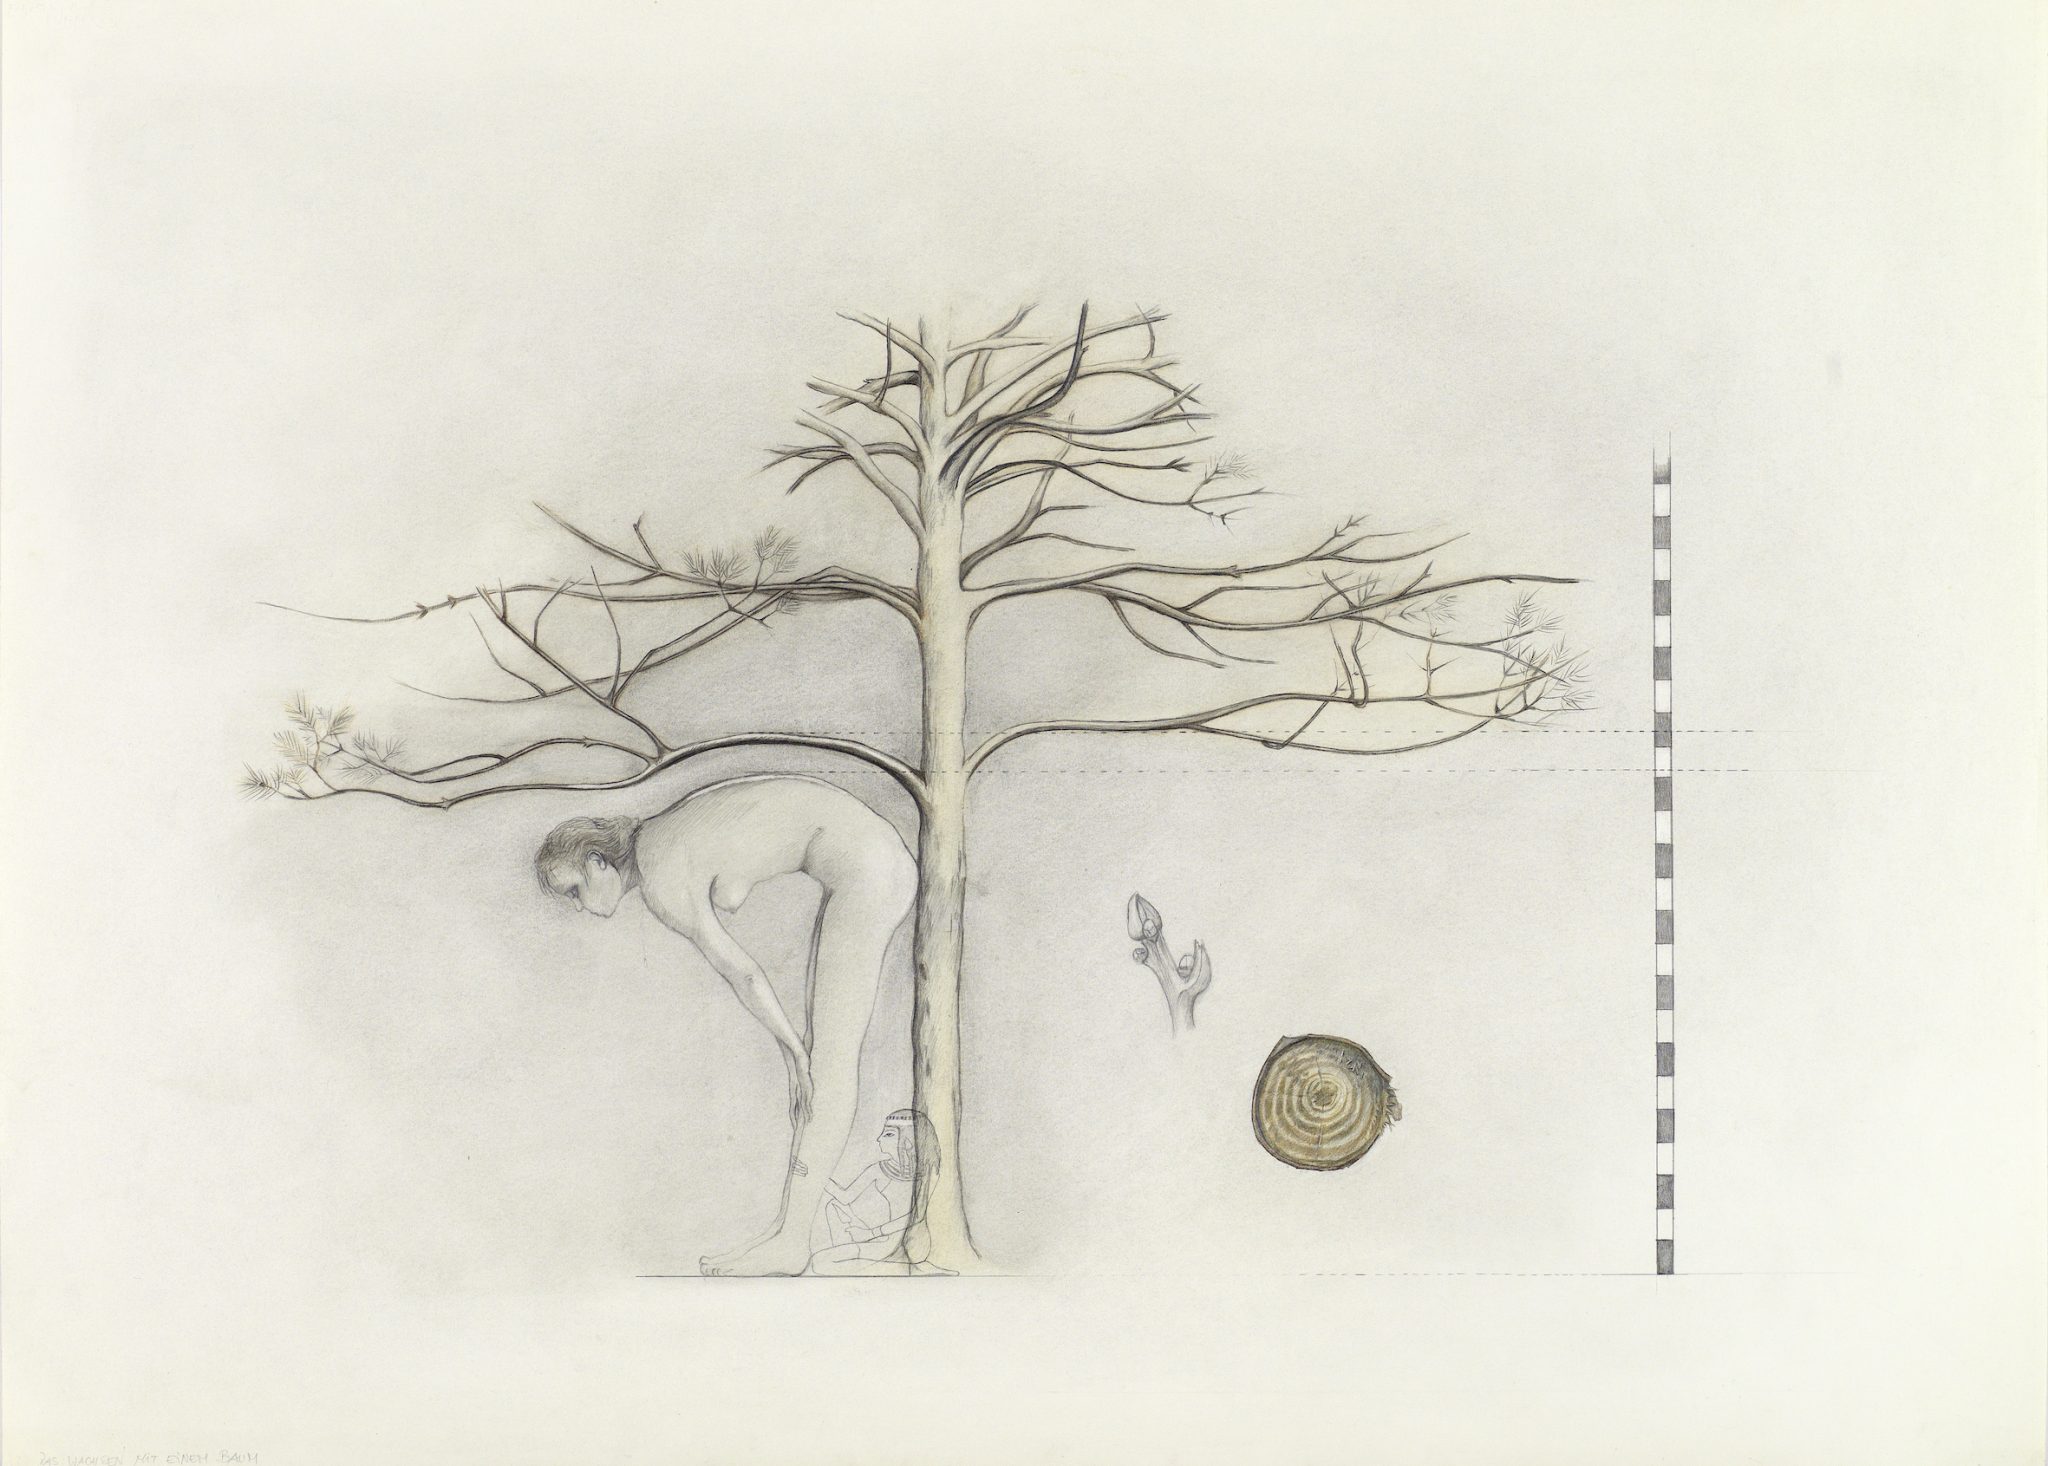 5. BJ_Das Wachsen mit einem Baum, 1977